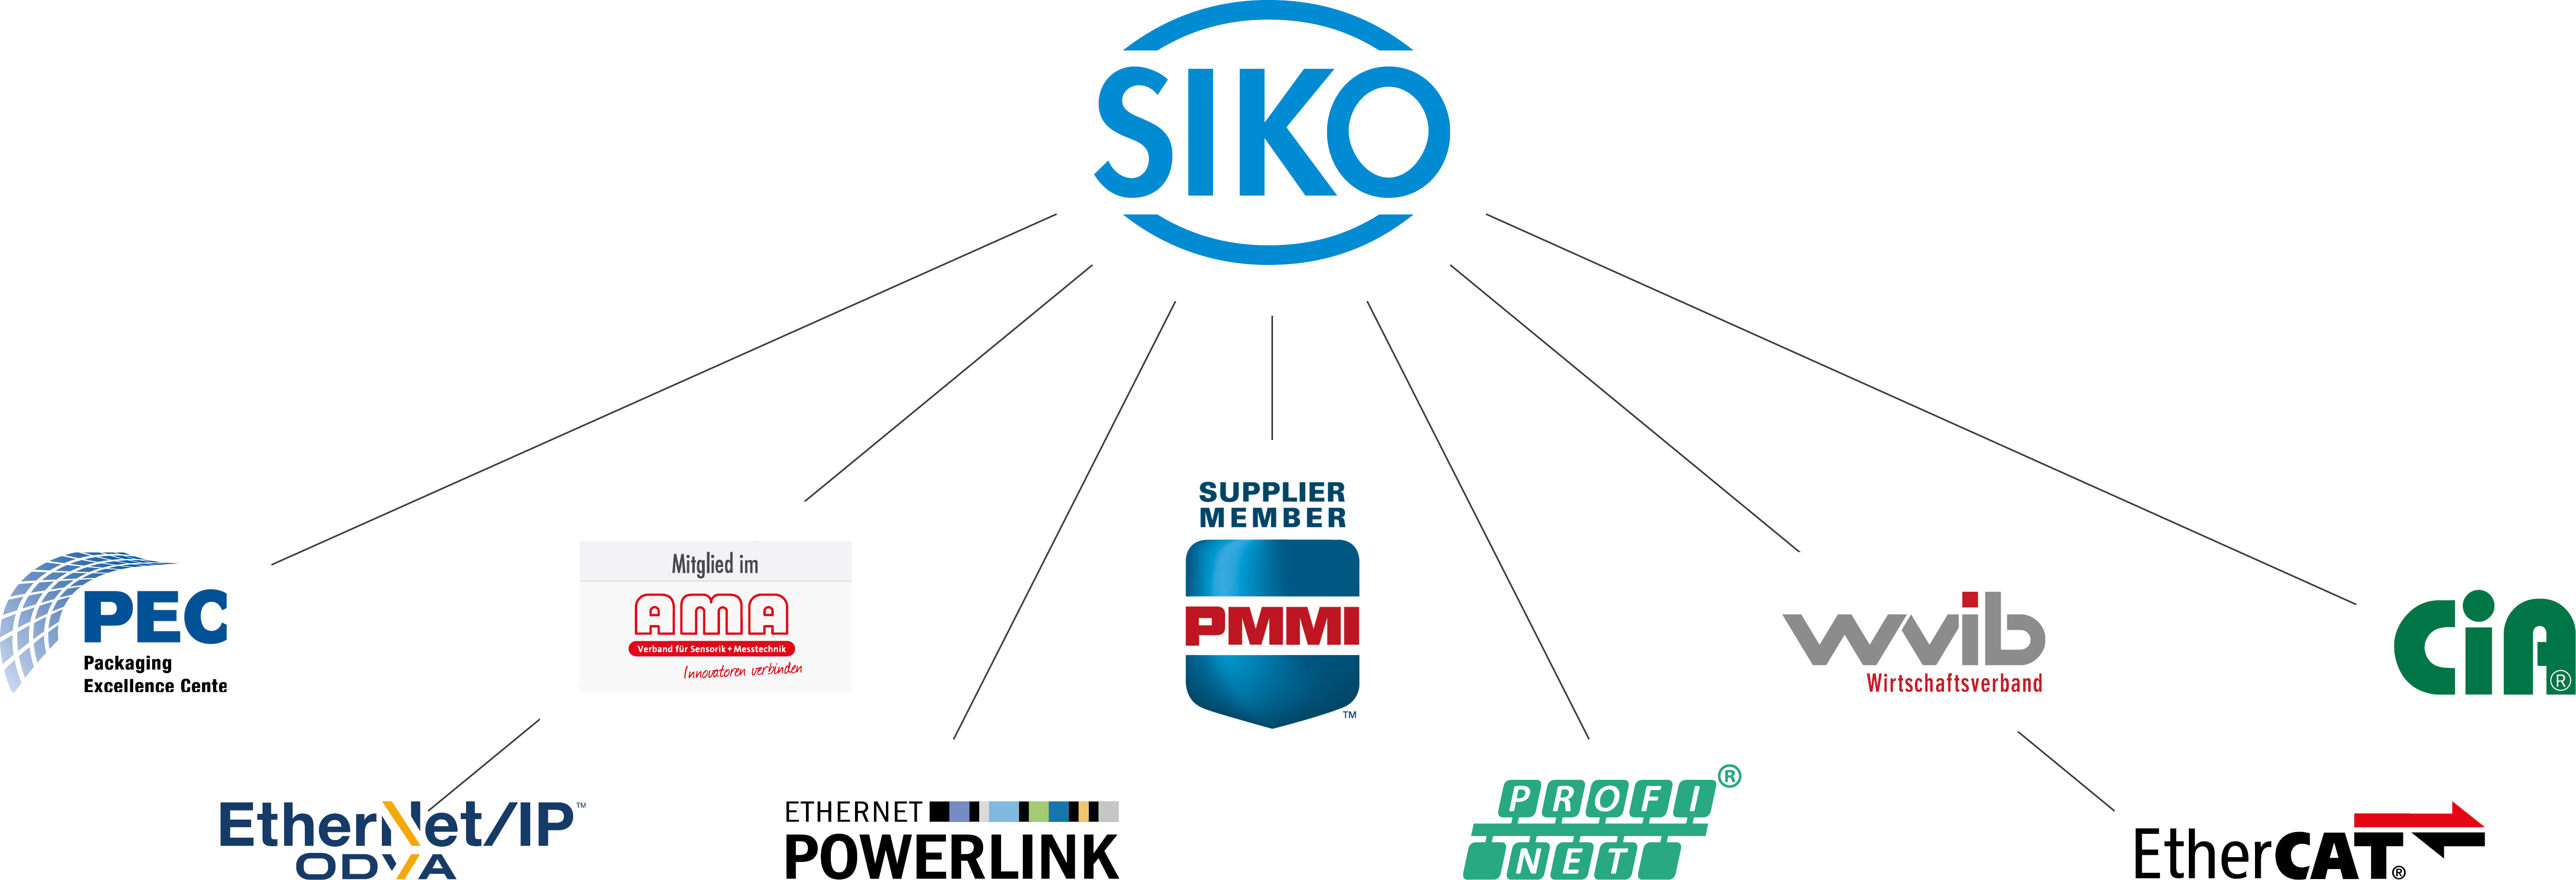 Loghi delle reti aziendali e delle organizzazioni degli utenti di cui SIKO è membro